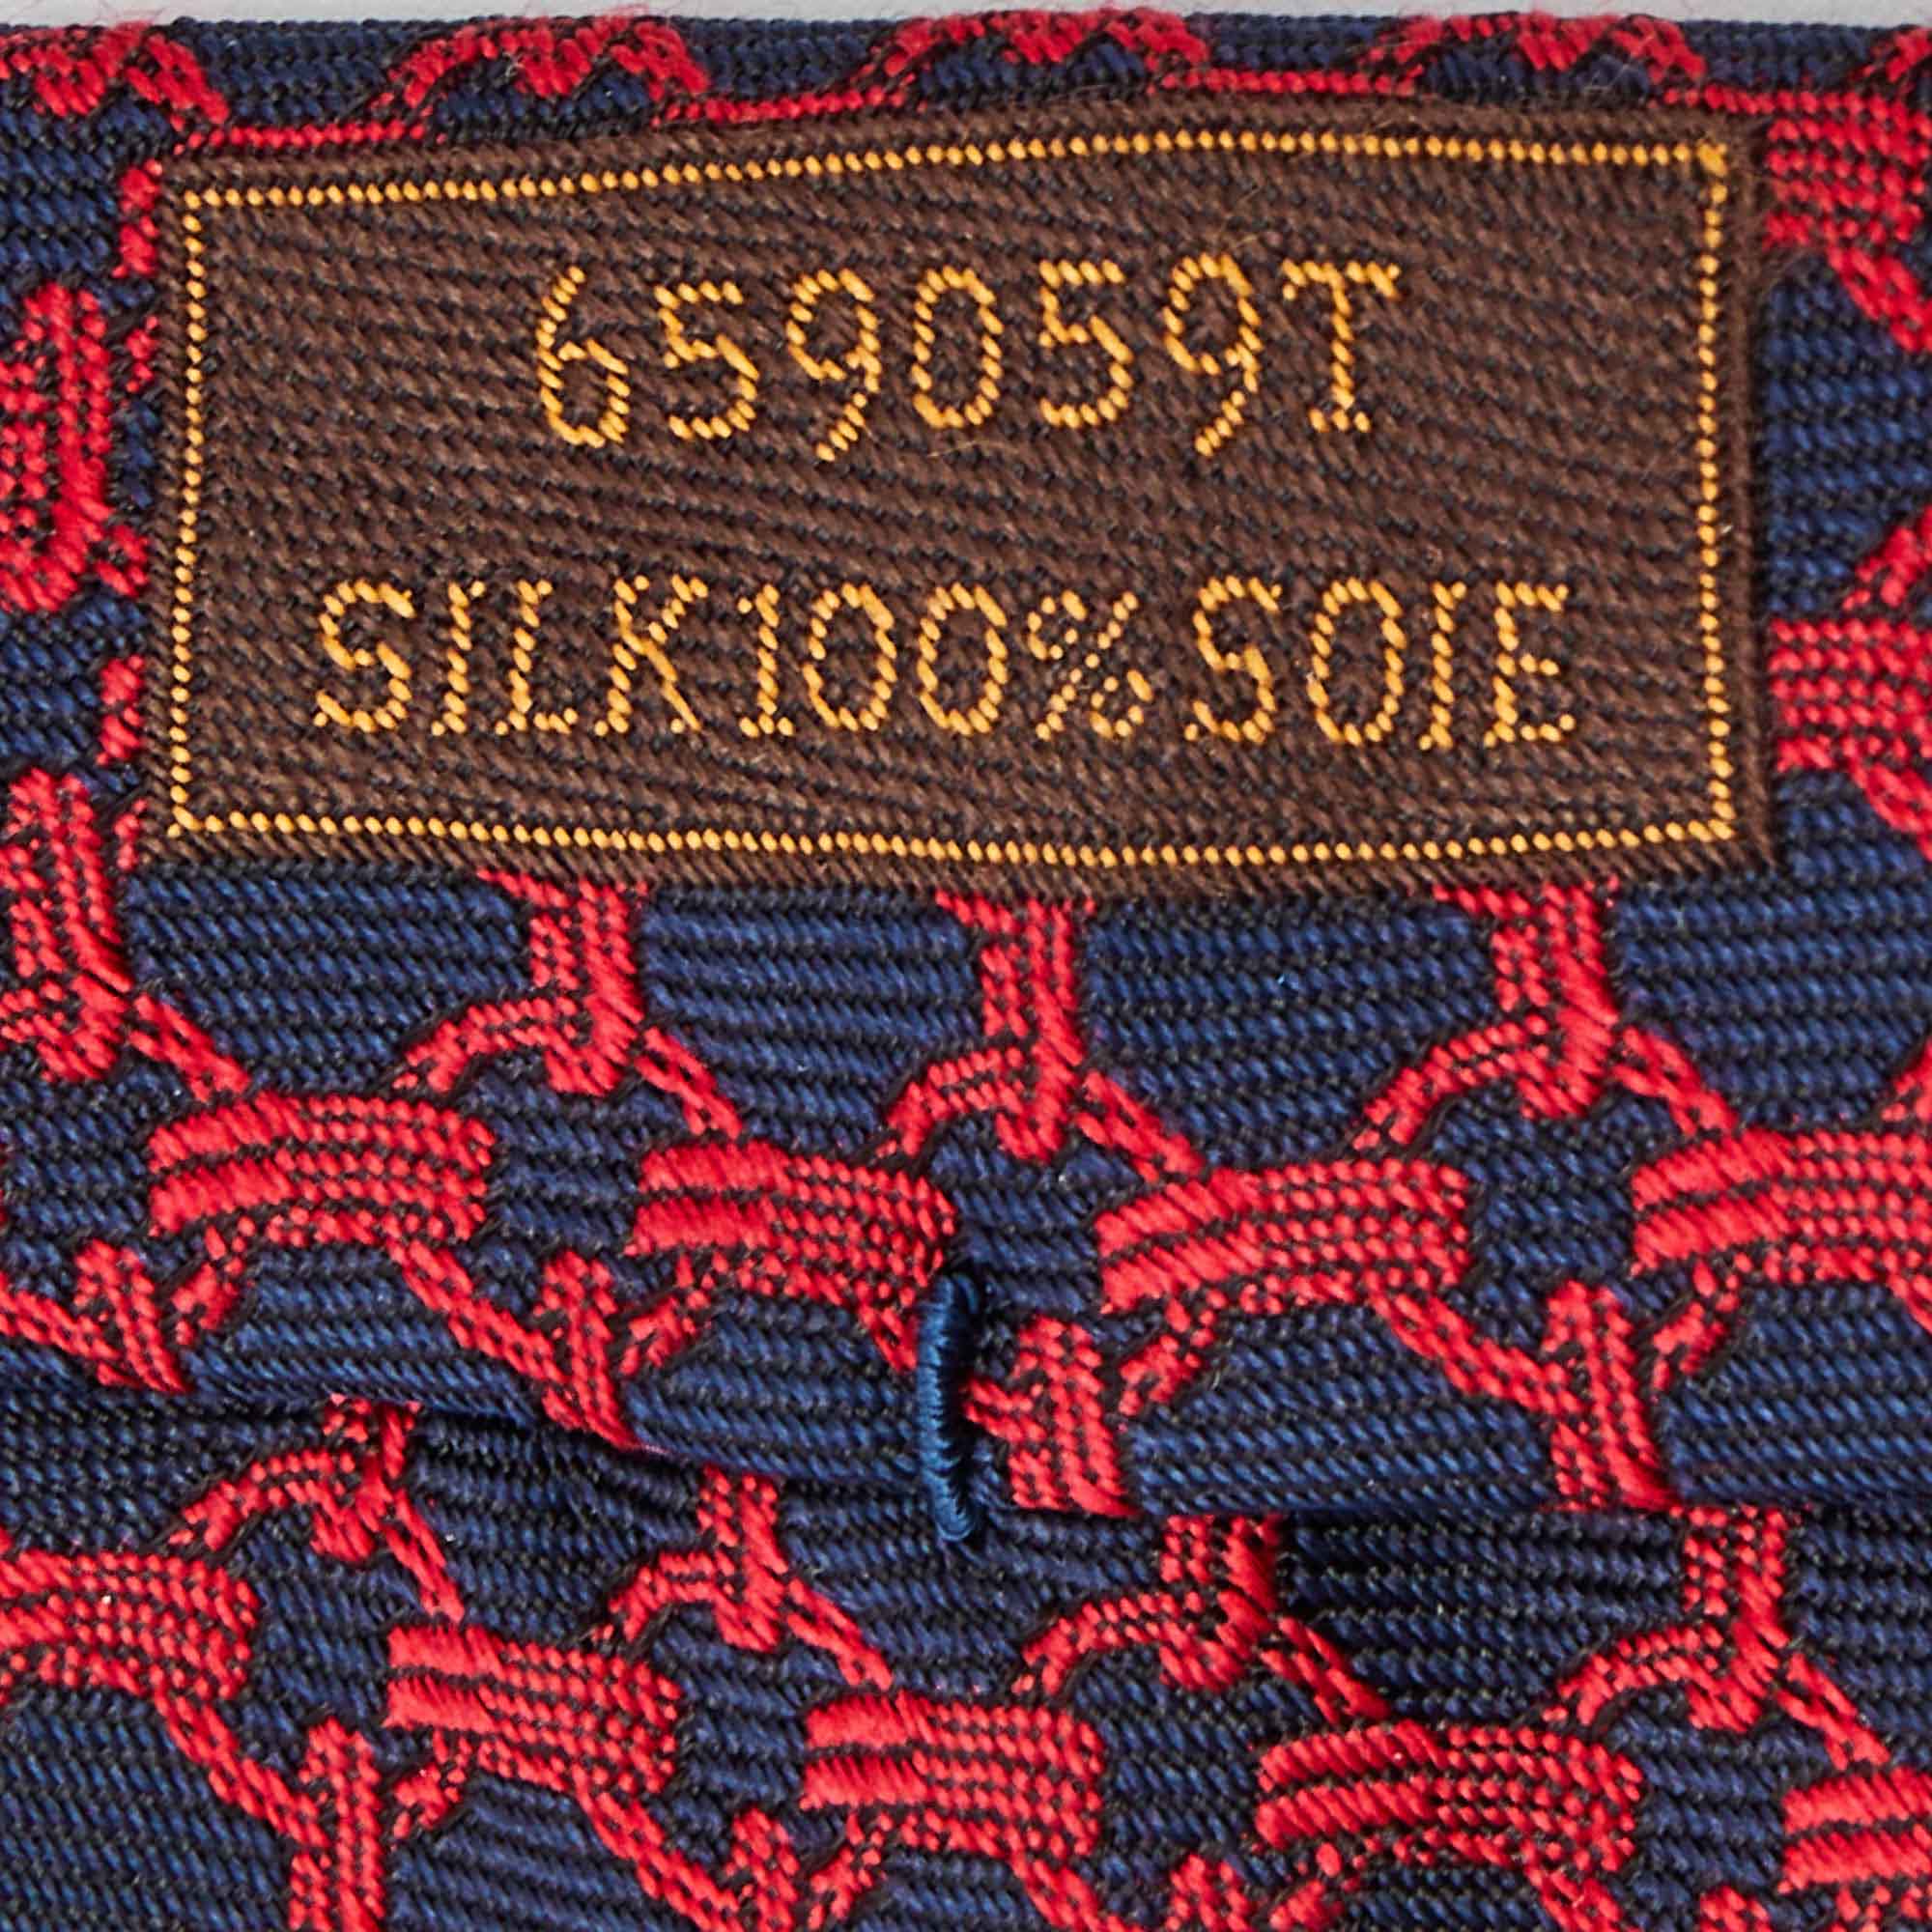 Hermes Navy Blue/Red Patterned Silk Tie